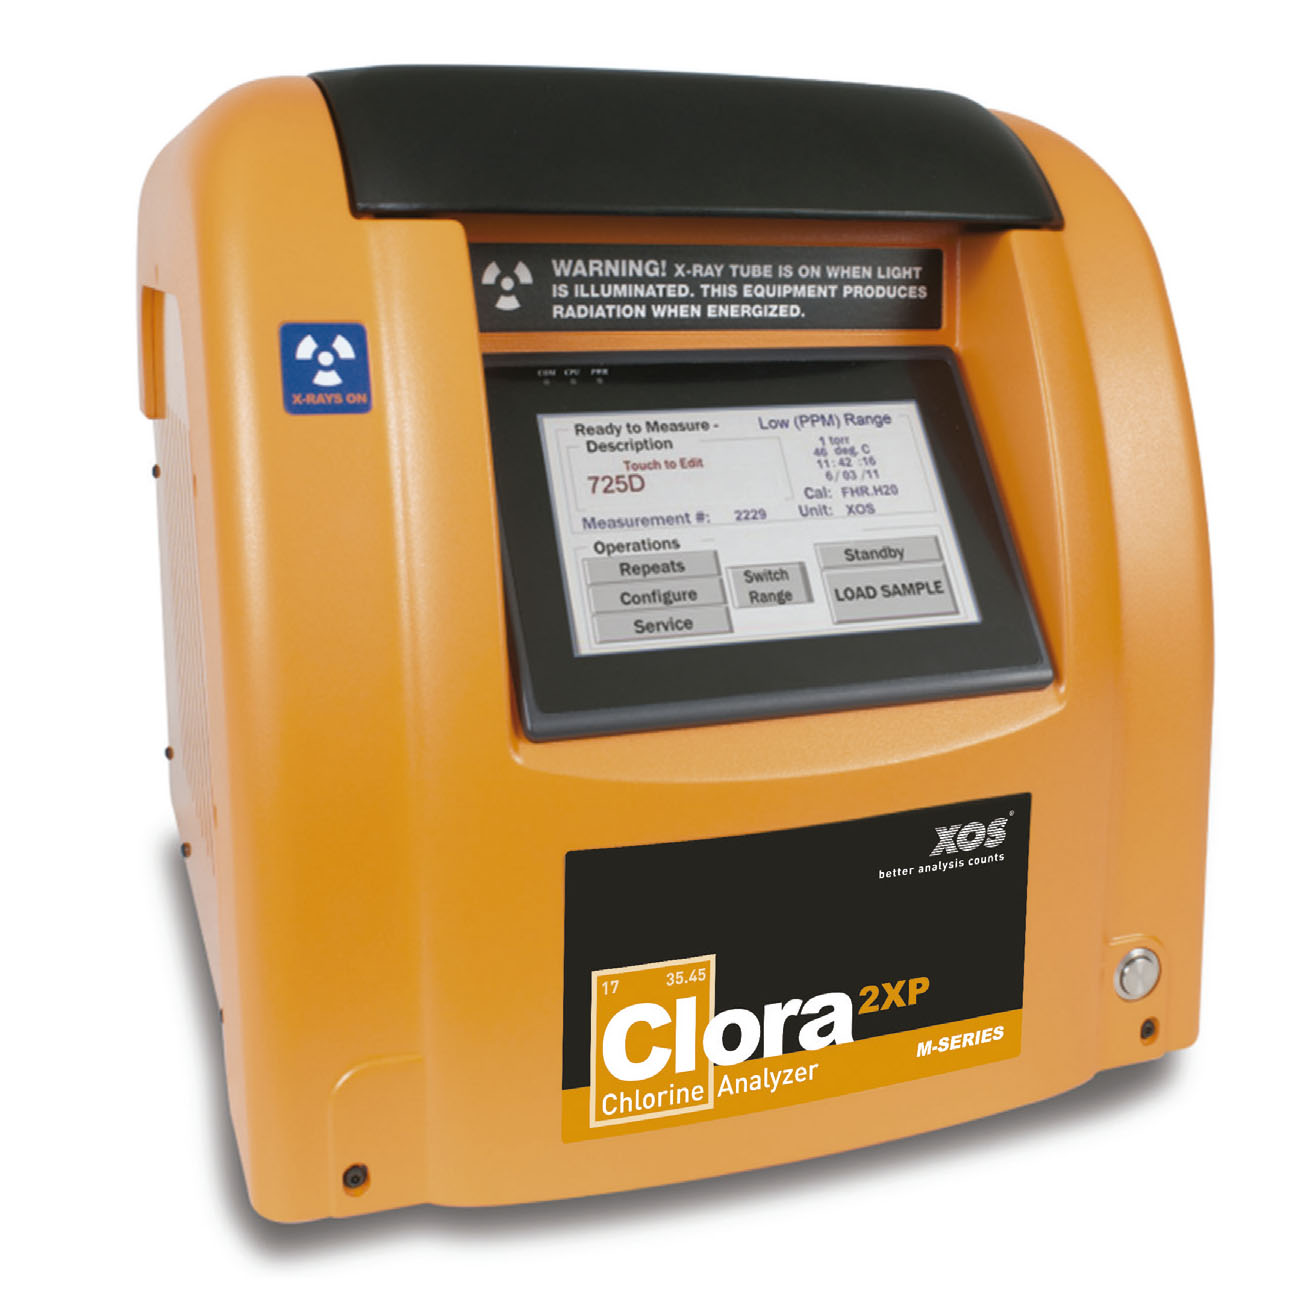 Clora 2XP Benchtop | Analizador de cloro en hidrocarburos líquidos, soluciones acuosas y catalizador